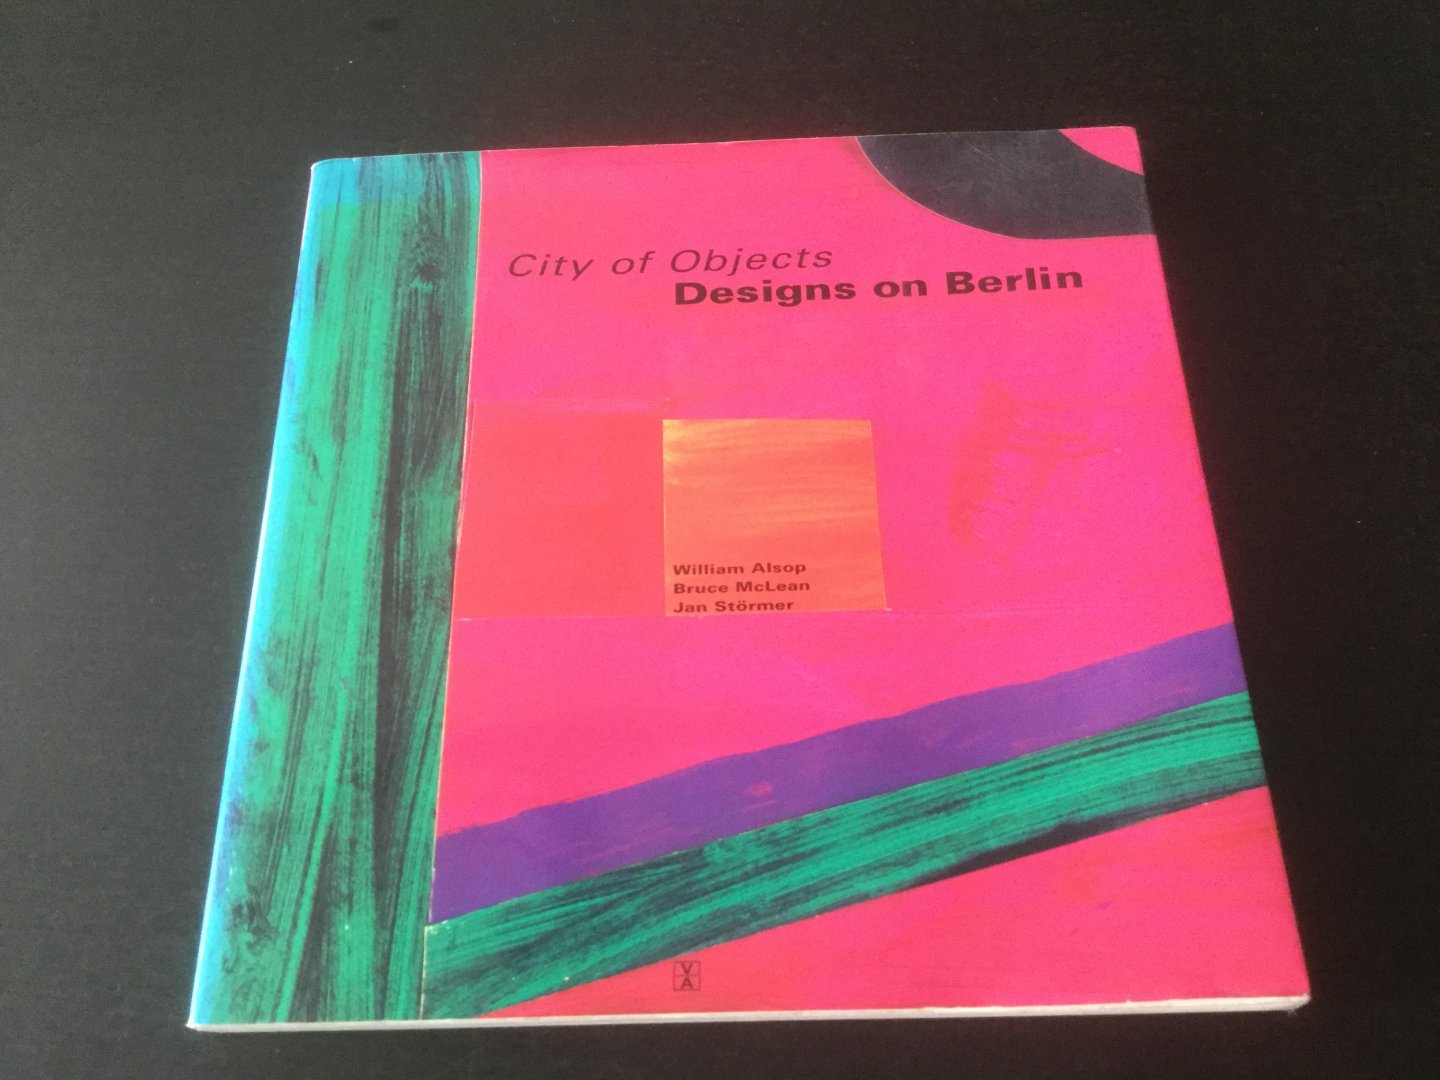 W. Alsop, B. McLean, J. Stormer - City of Objects, Design on Berlin